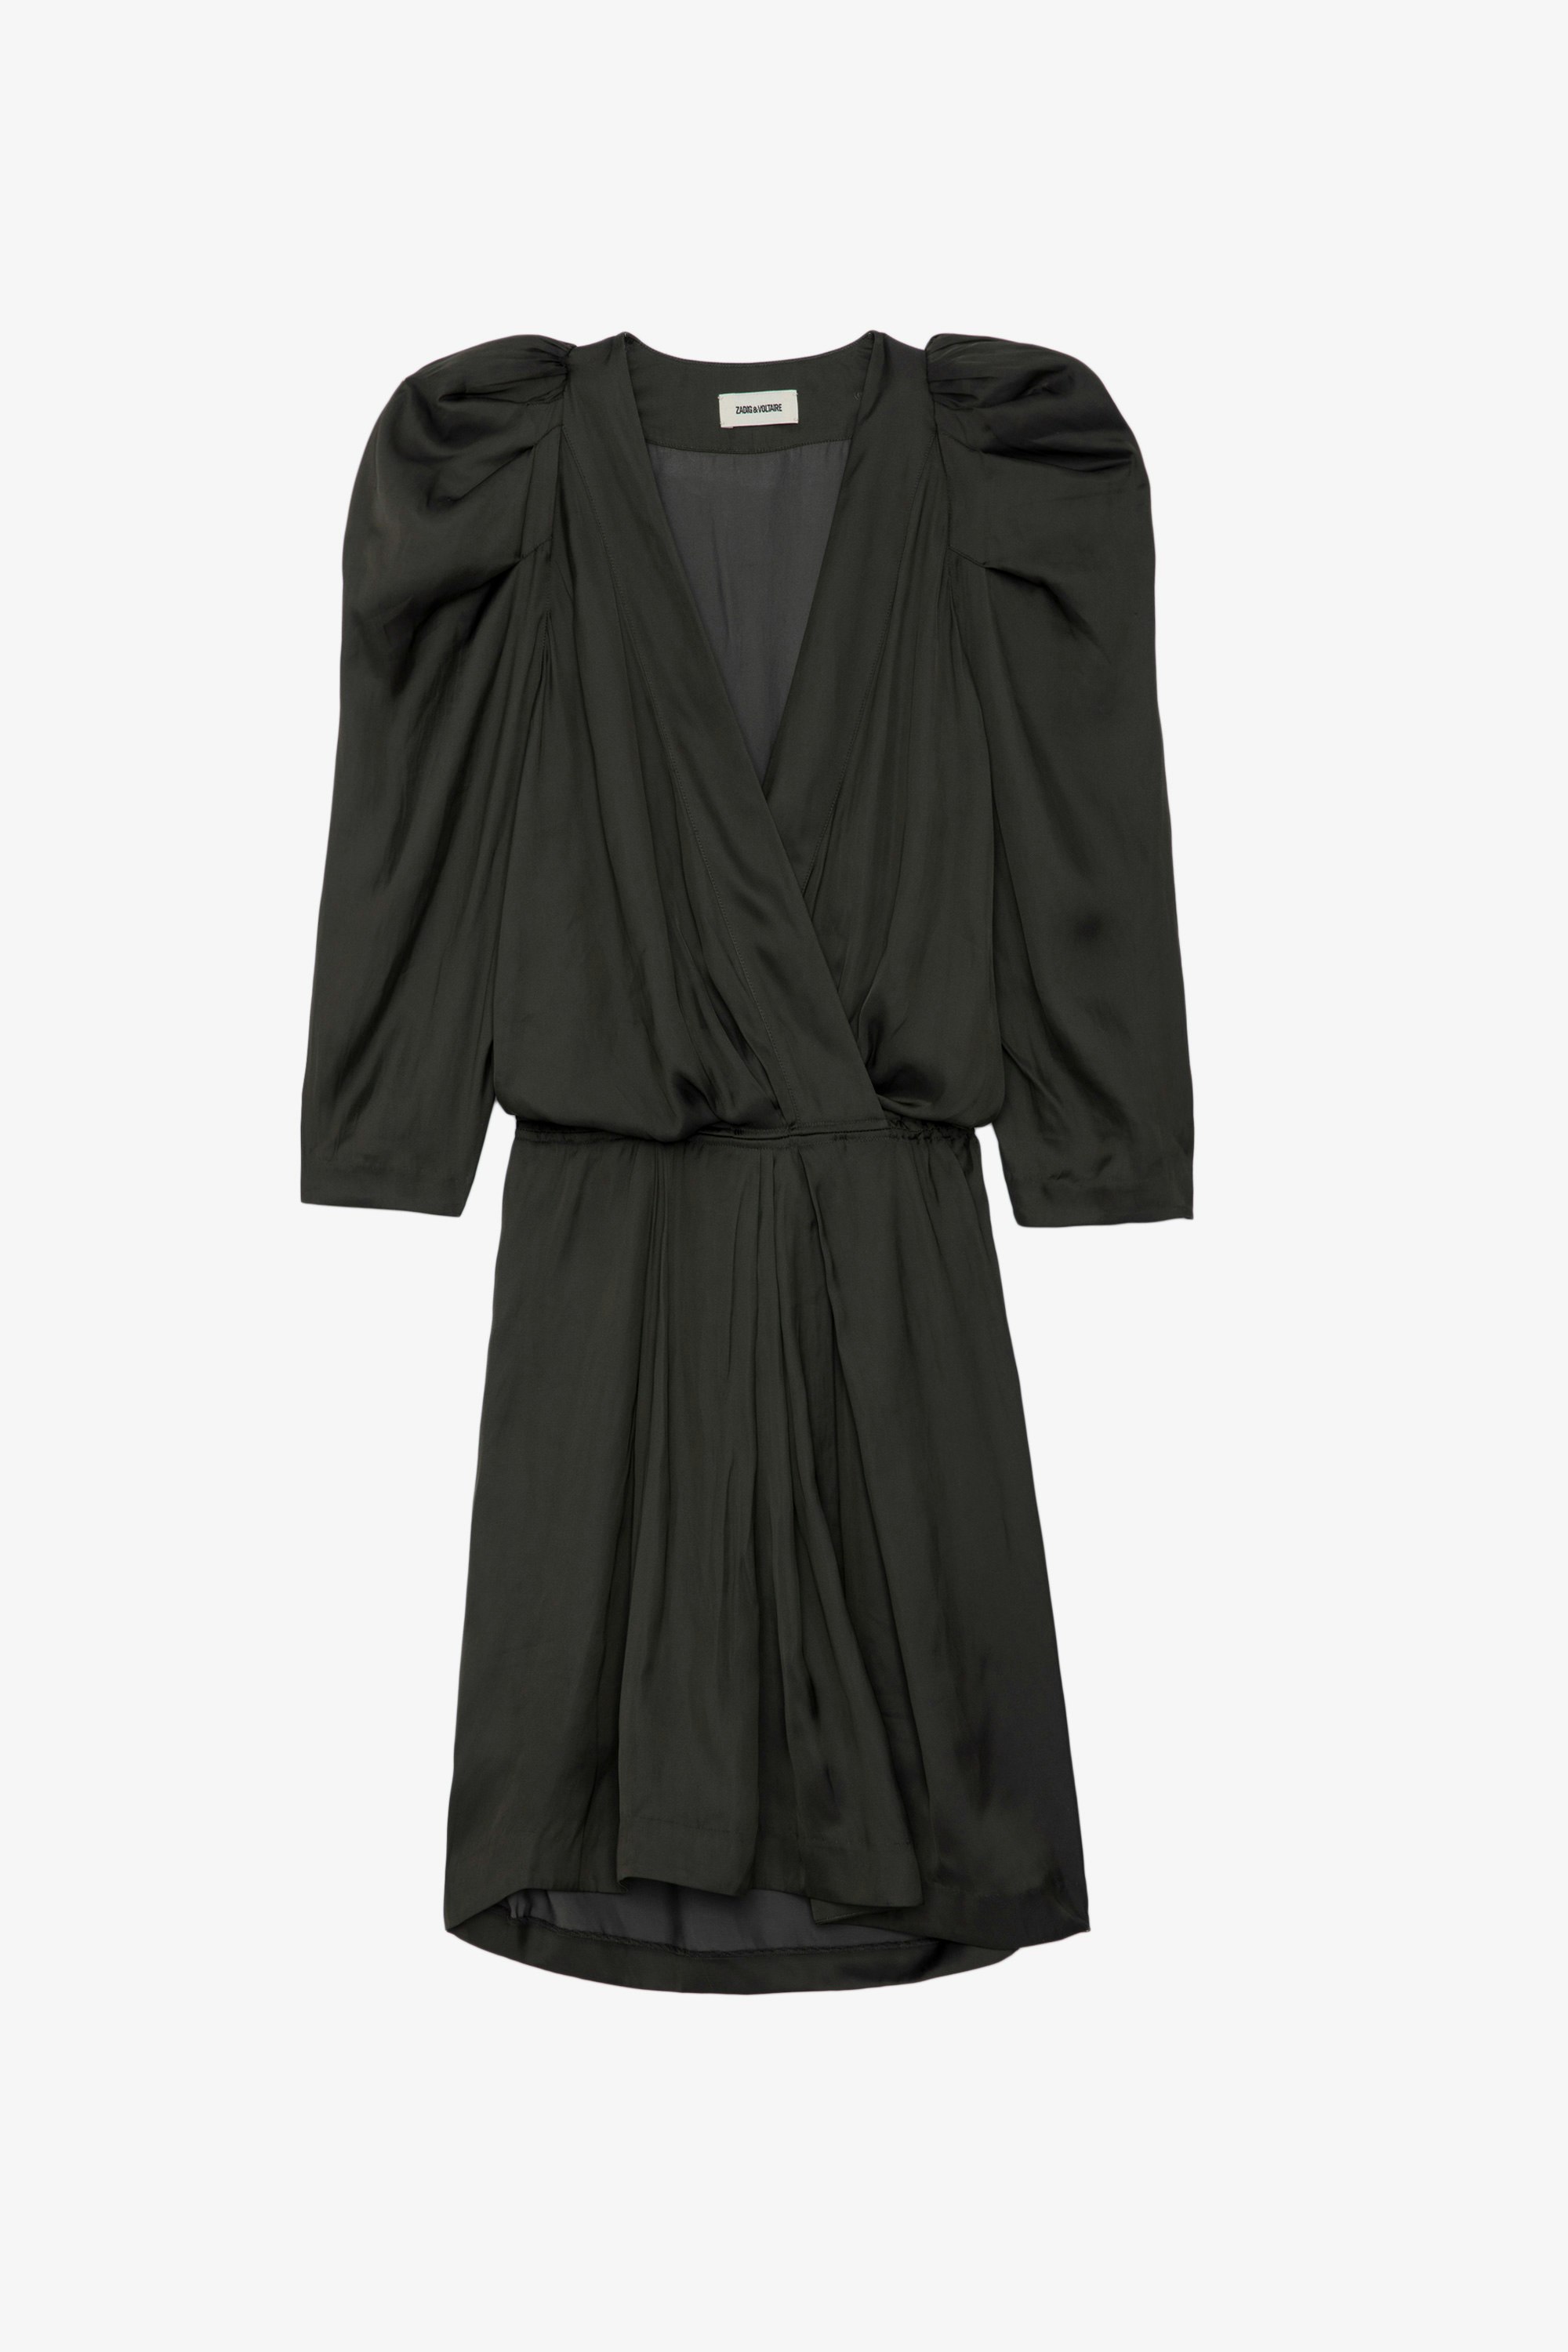 Robe Ruz Satin - Robe courte en satin noir à manches 3/4, taille élastiquée et fronces aux épaules.